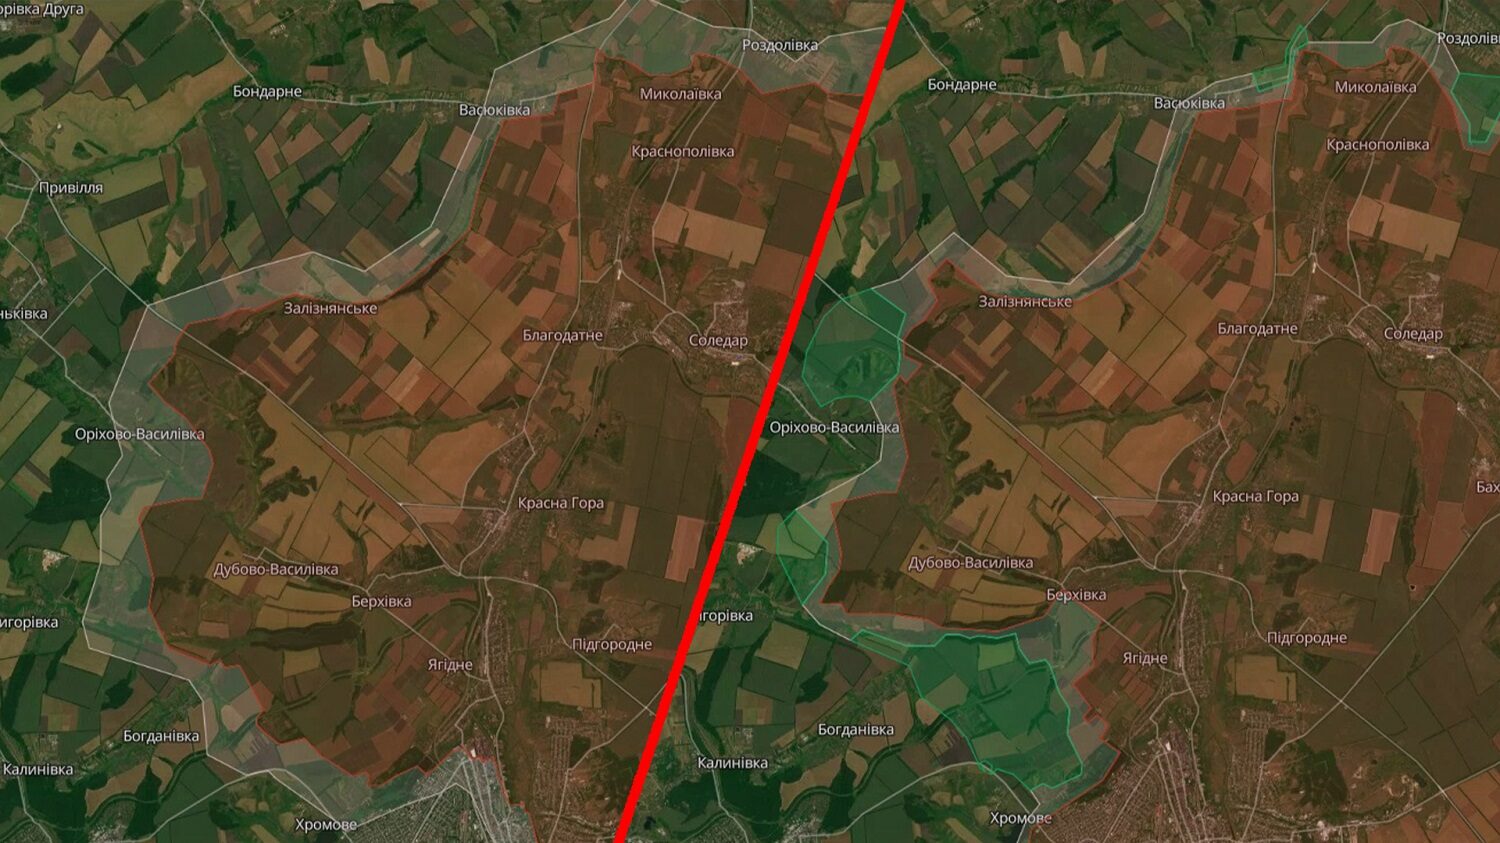 Ліворуч — мапа боїв на Соледарському напрямку станом на 31 березня, а праворуч — наприкінці серпня